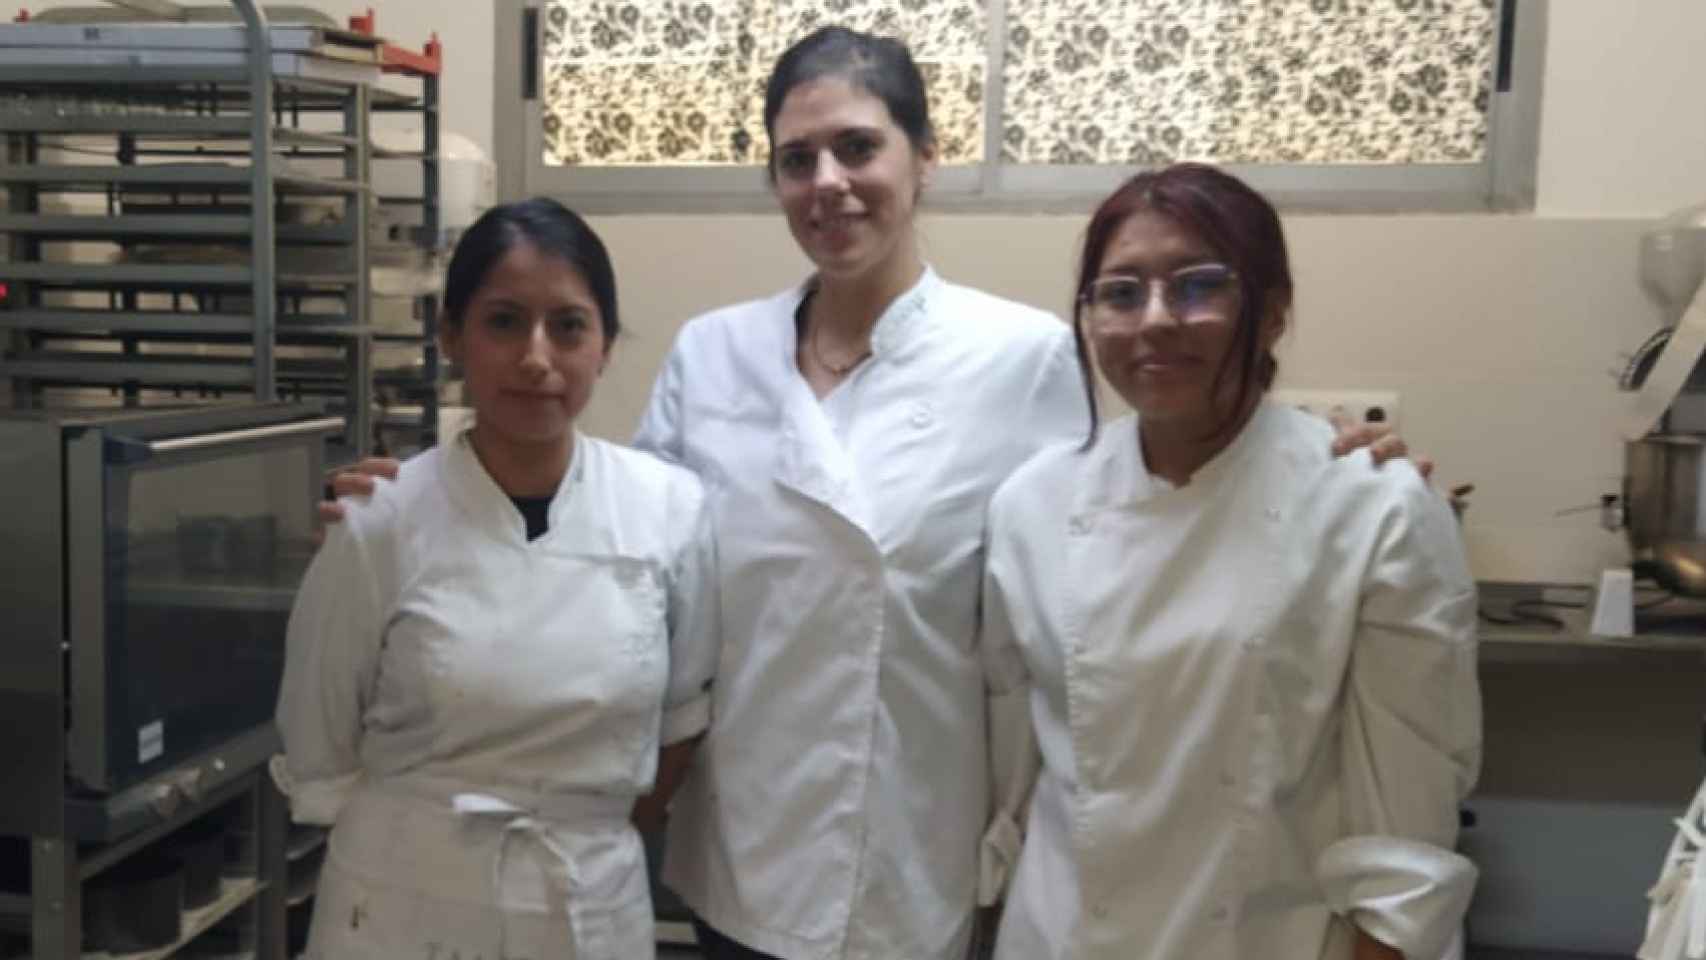 De izquierda a derecha Gabriela, Andrea y Manuela, tres trabajadoras del obrador Nicolina.